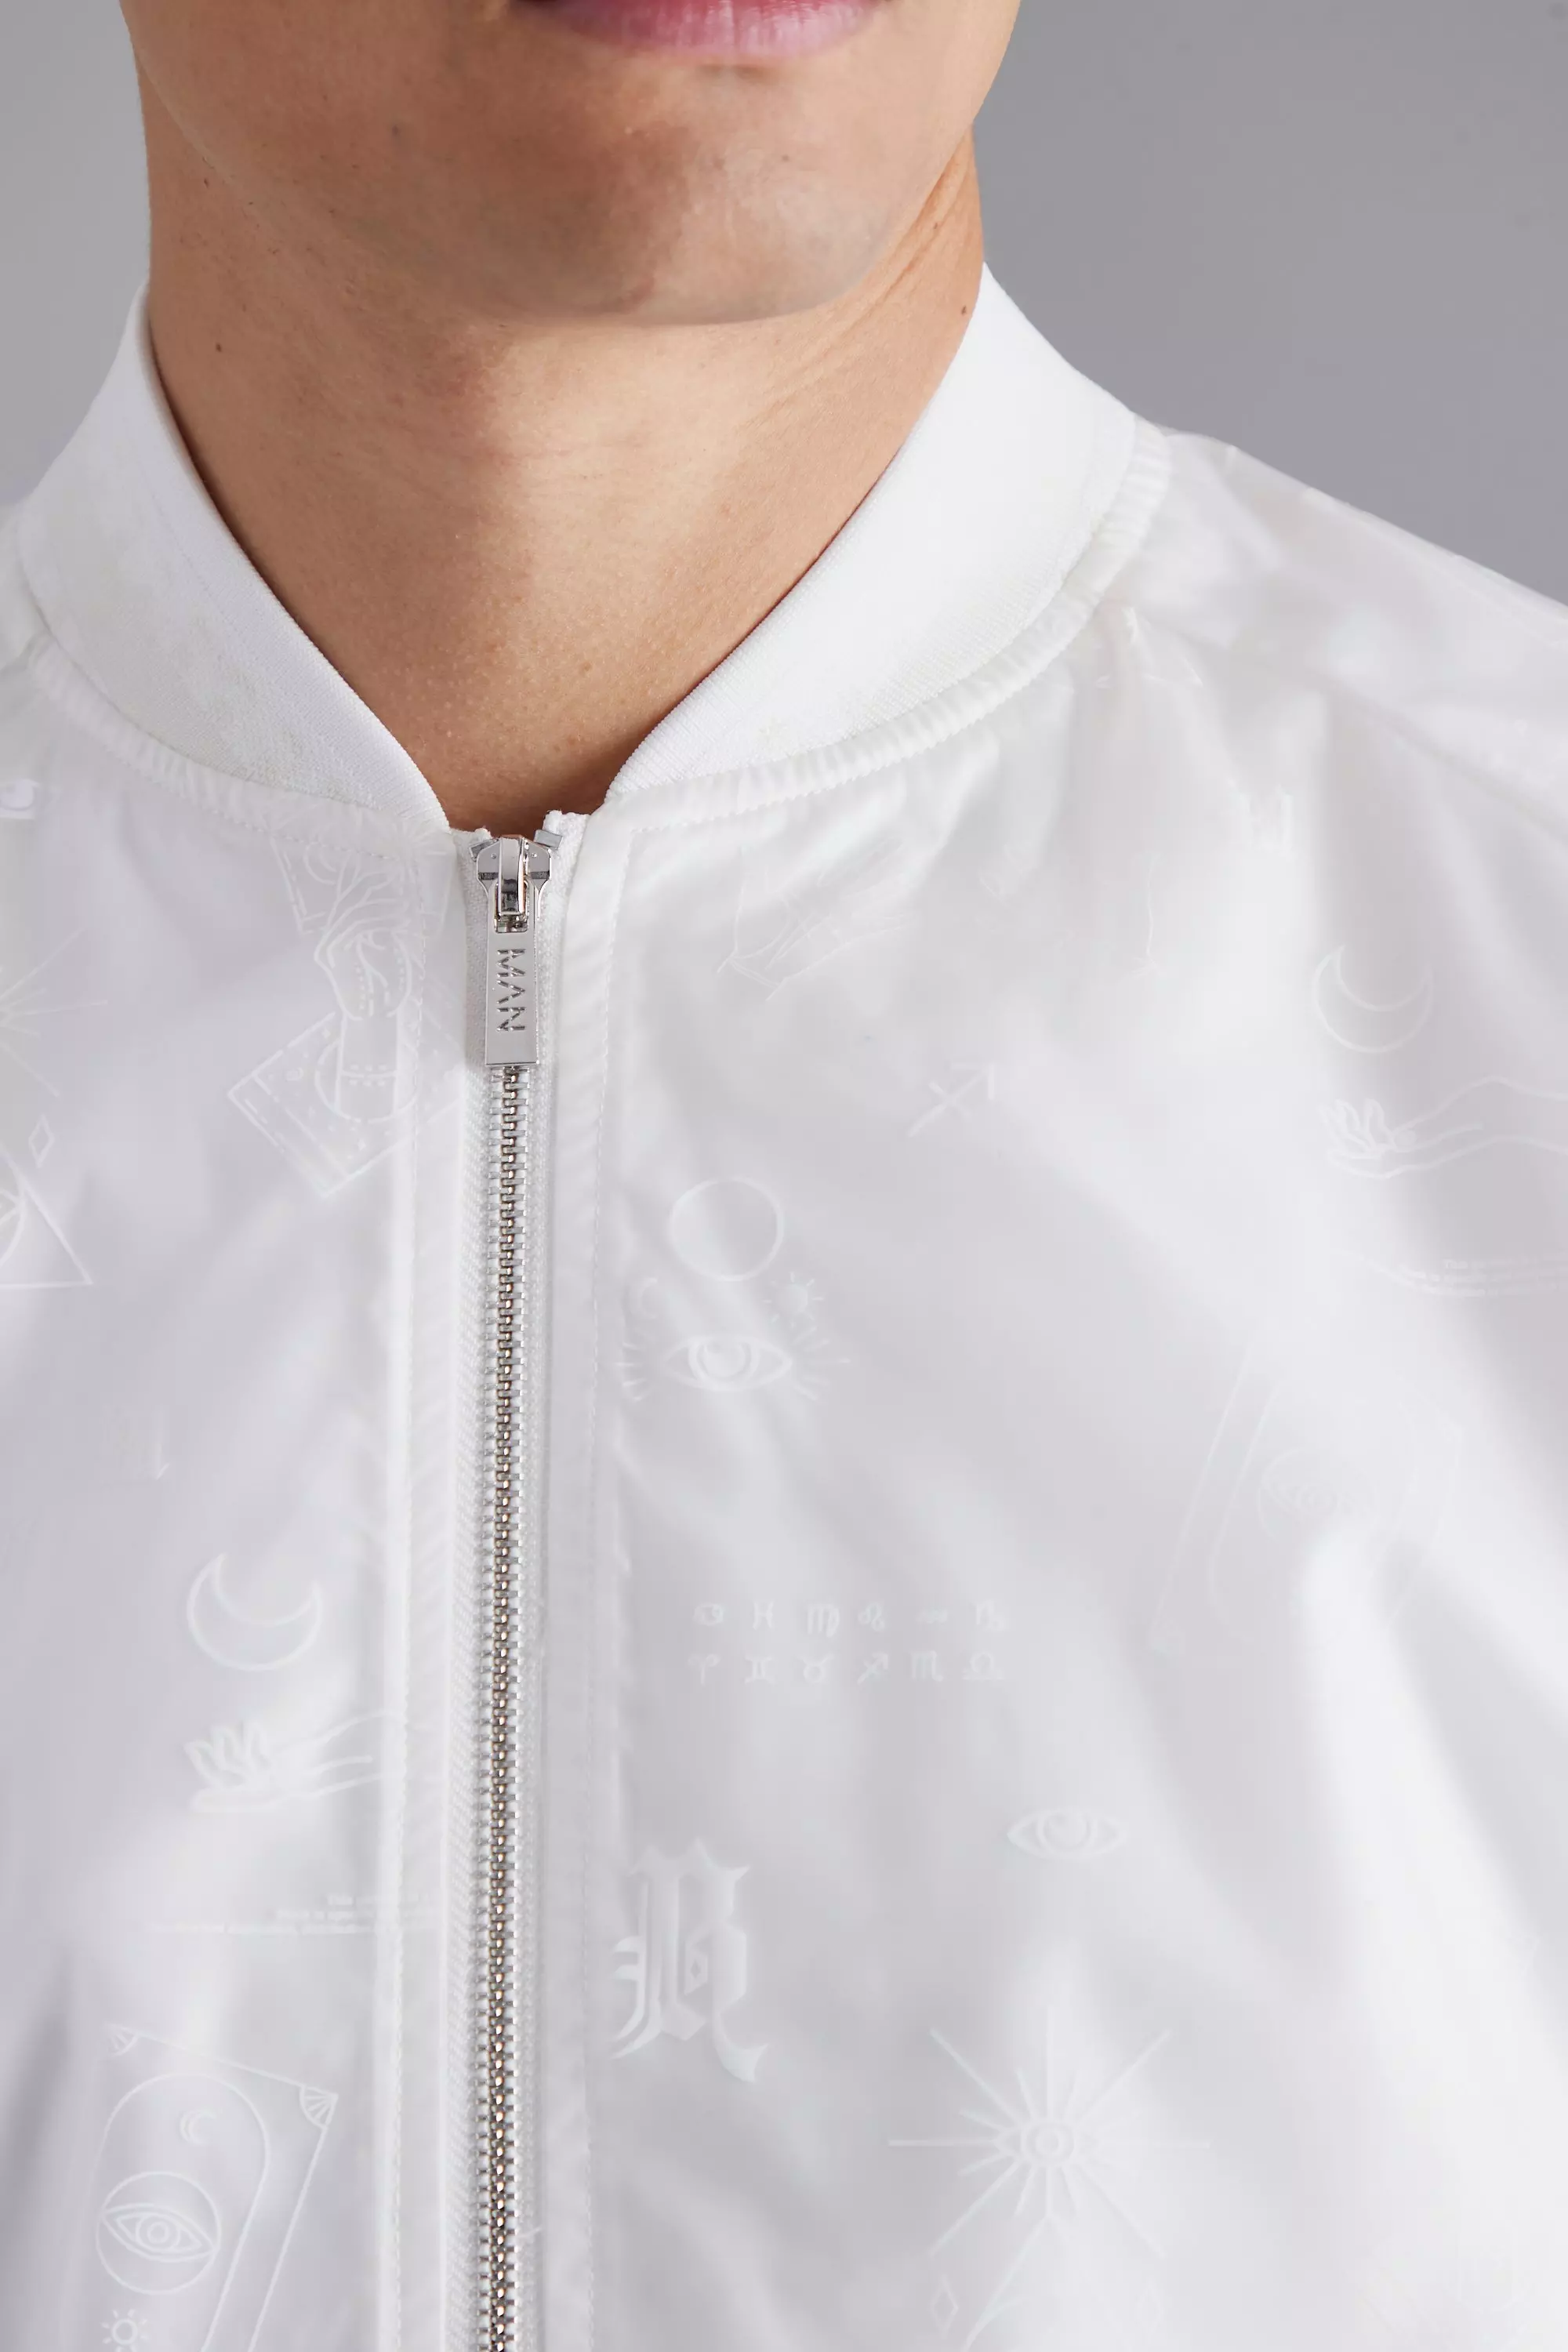 Louis Vuitton White Monogram Cotton and Polyester Bomber Jacket